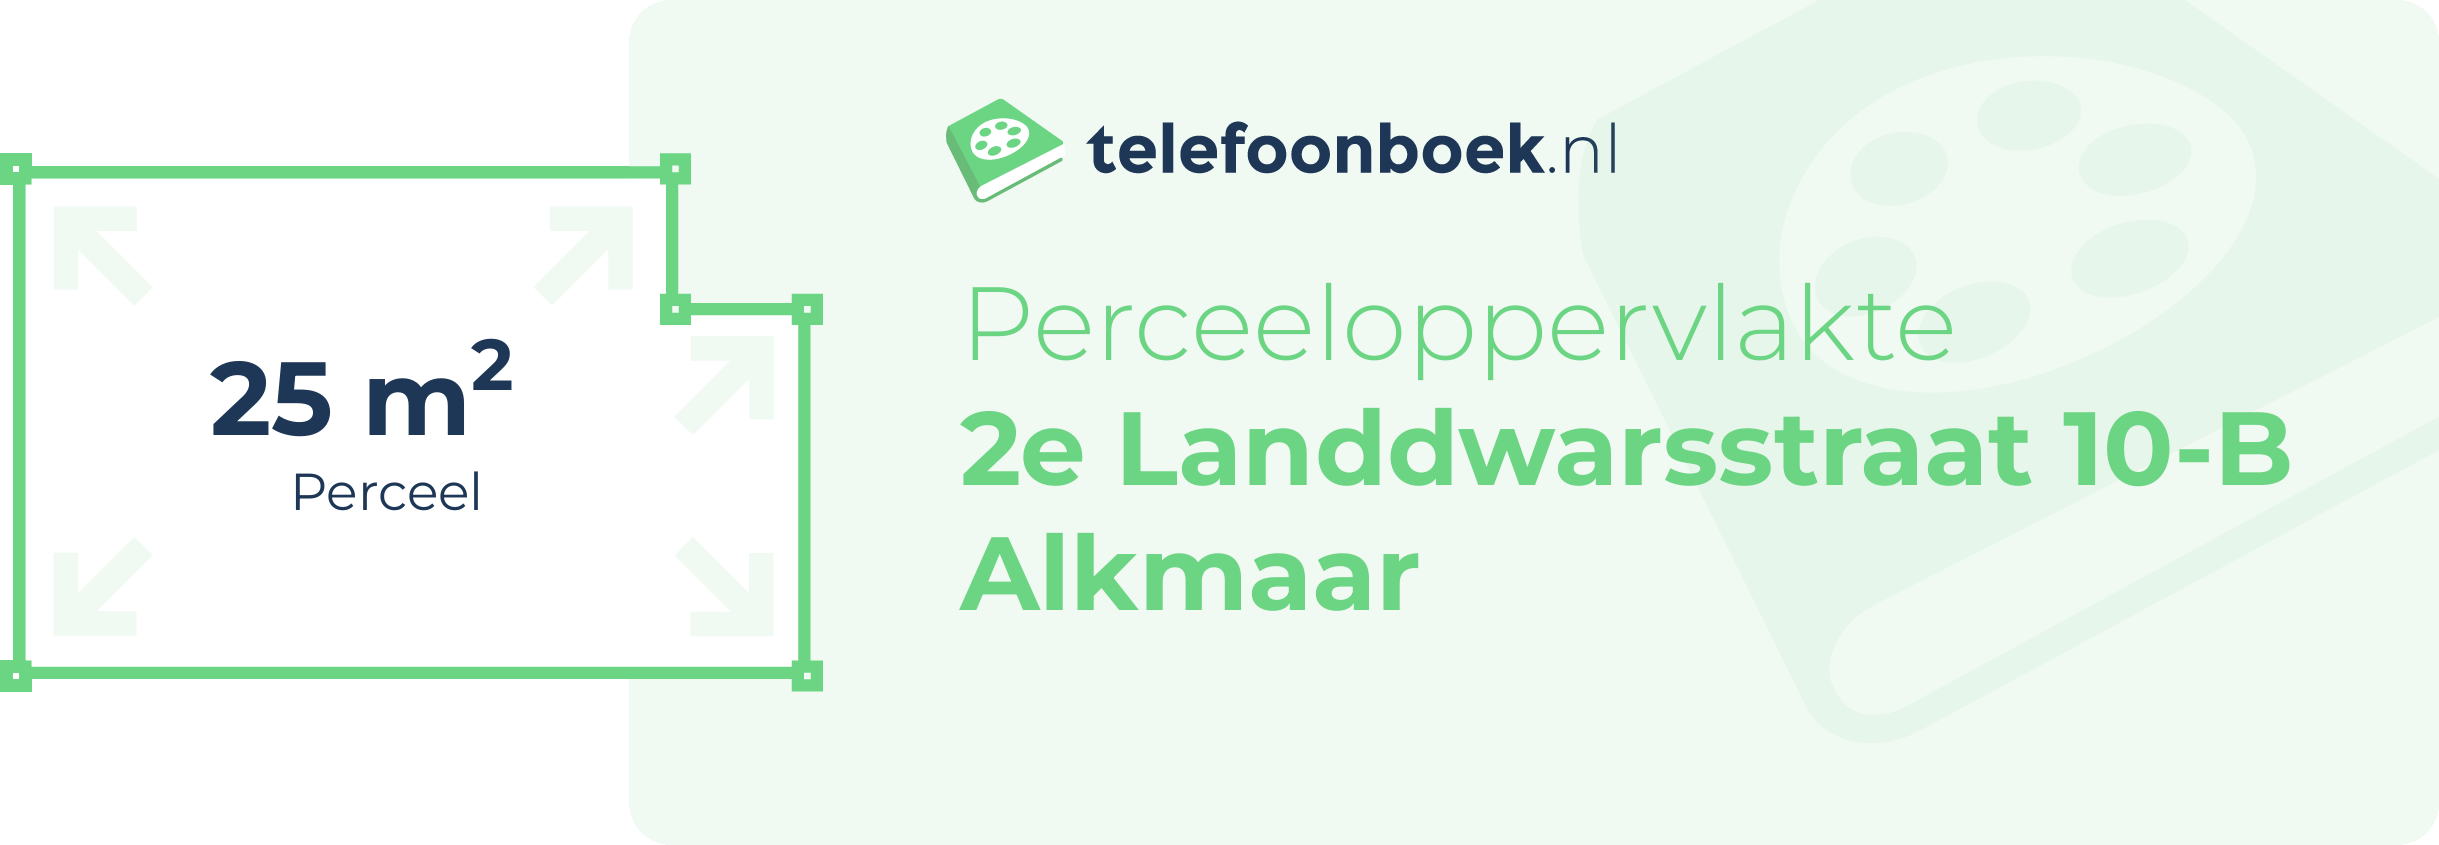 Perceeloppervlakte 2e Landdwarsstraat 10-B Alkmaar